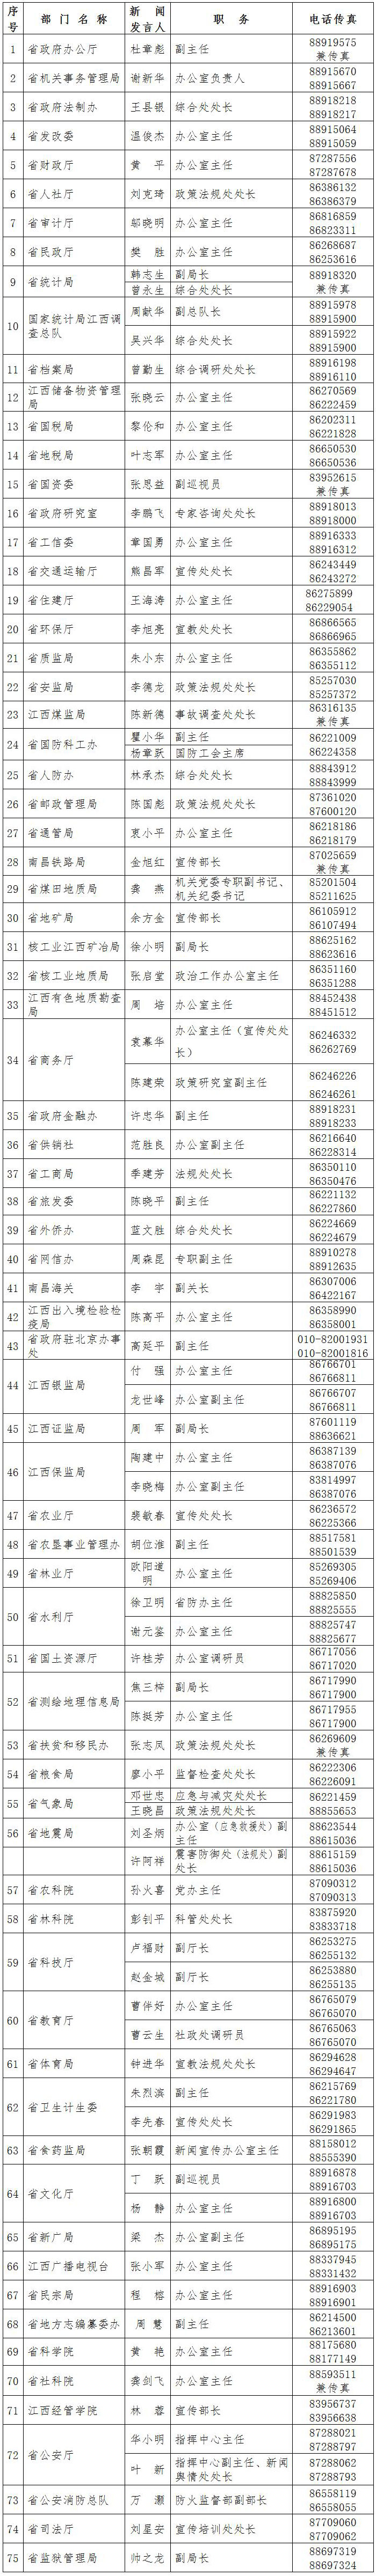 江西发布新闻发言人名单 240人中有1名副省级、53名厅级干部